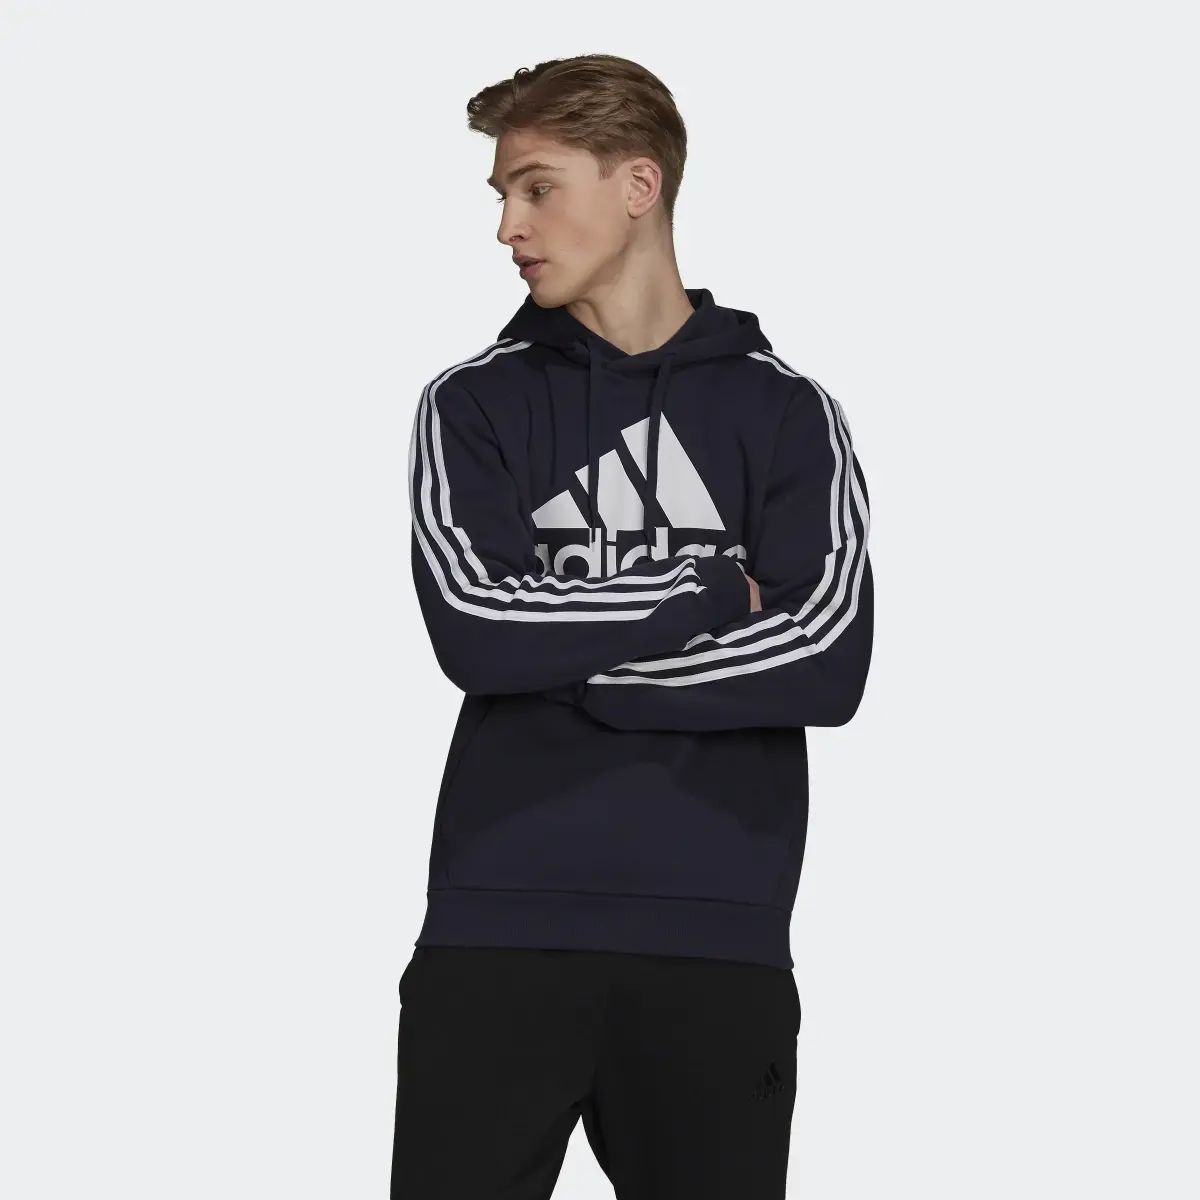 Adidas Essentials Fleece 3-Streifen Logo Hoodie. 2